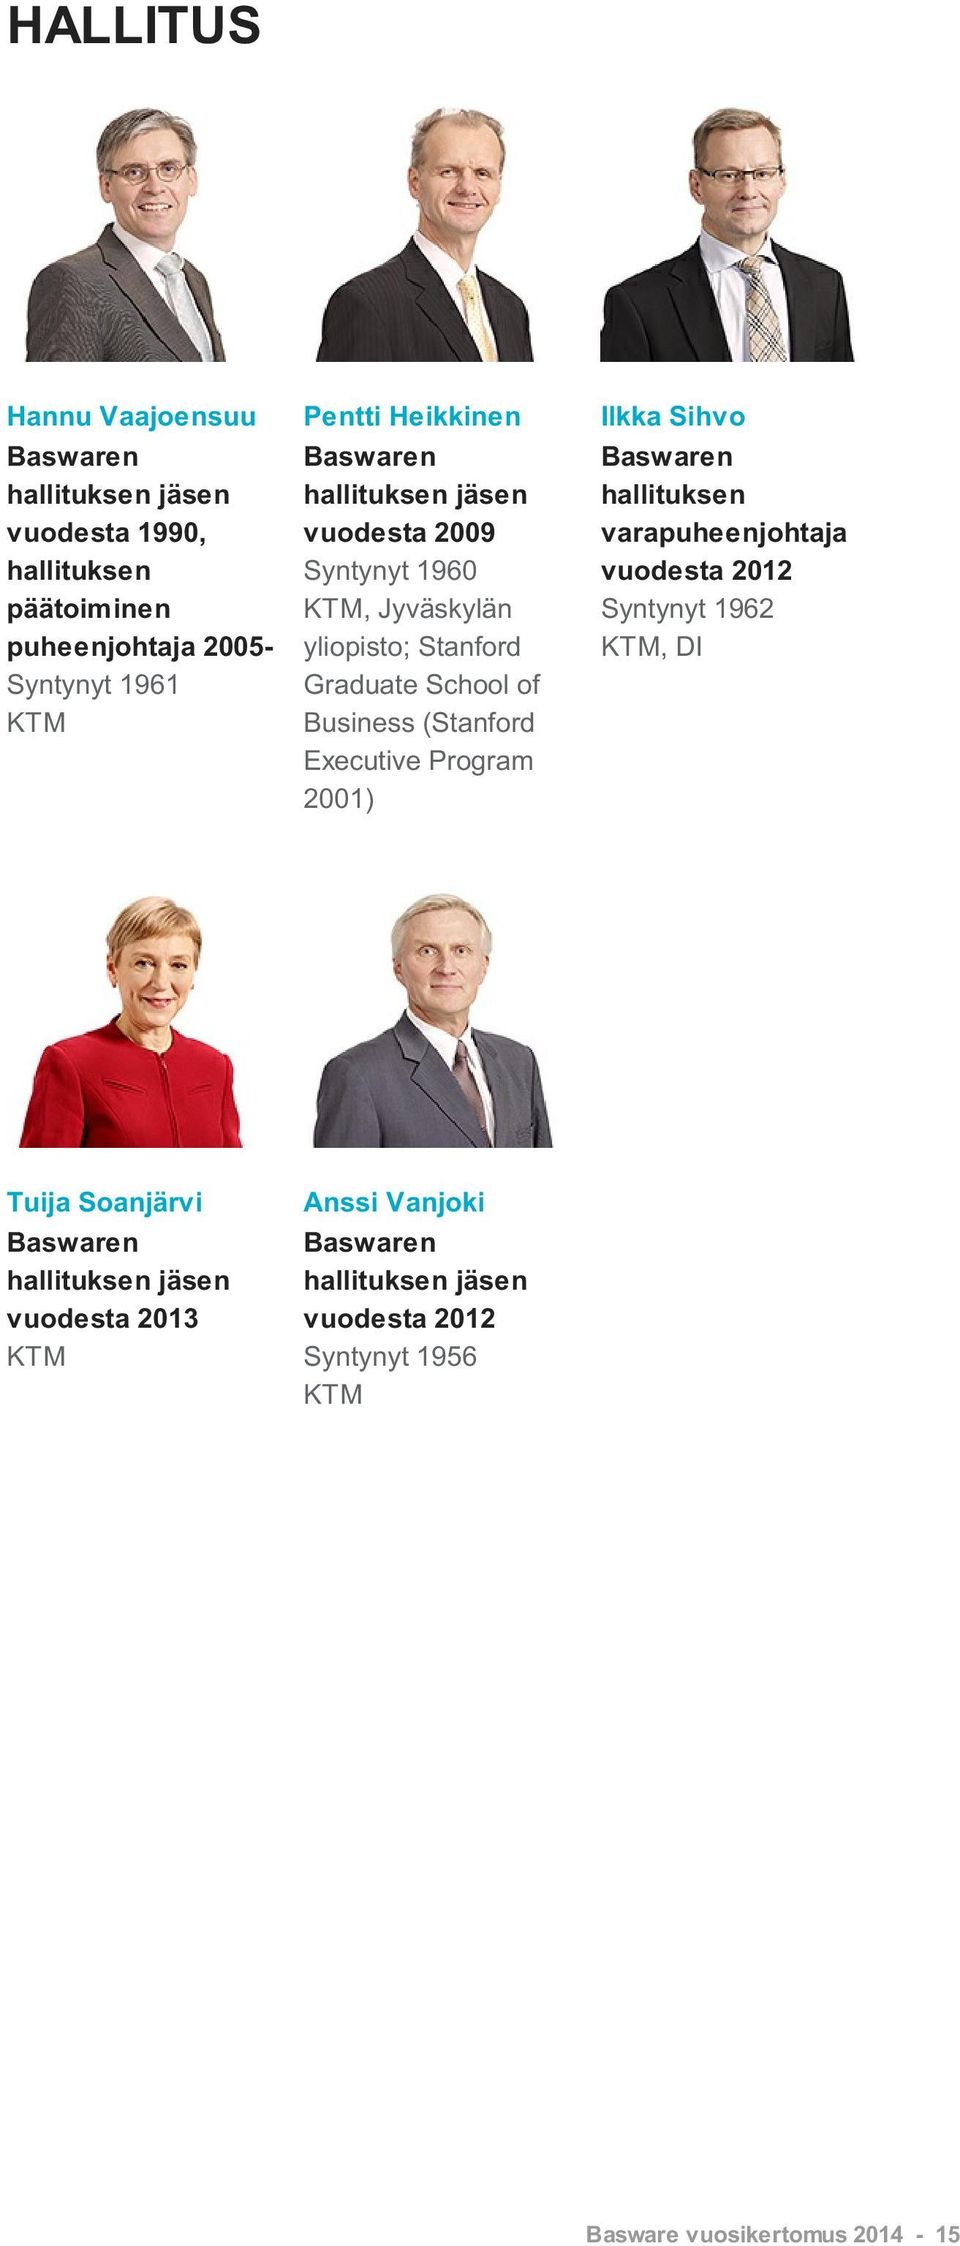 (Stanford Executive Program 2001) Ilkka Sihvo Baswaren hallituksen varapuheenjohtaja vuodesta 2012 Syntynyt 1962 KTM, DI Tuija Soanjärvi